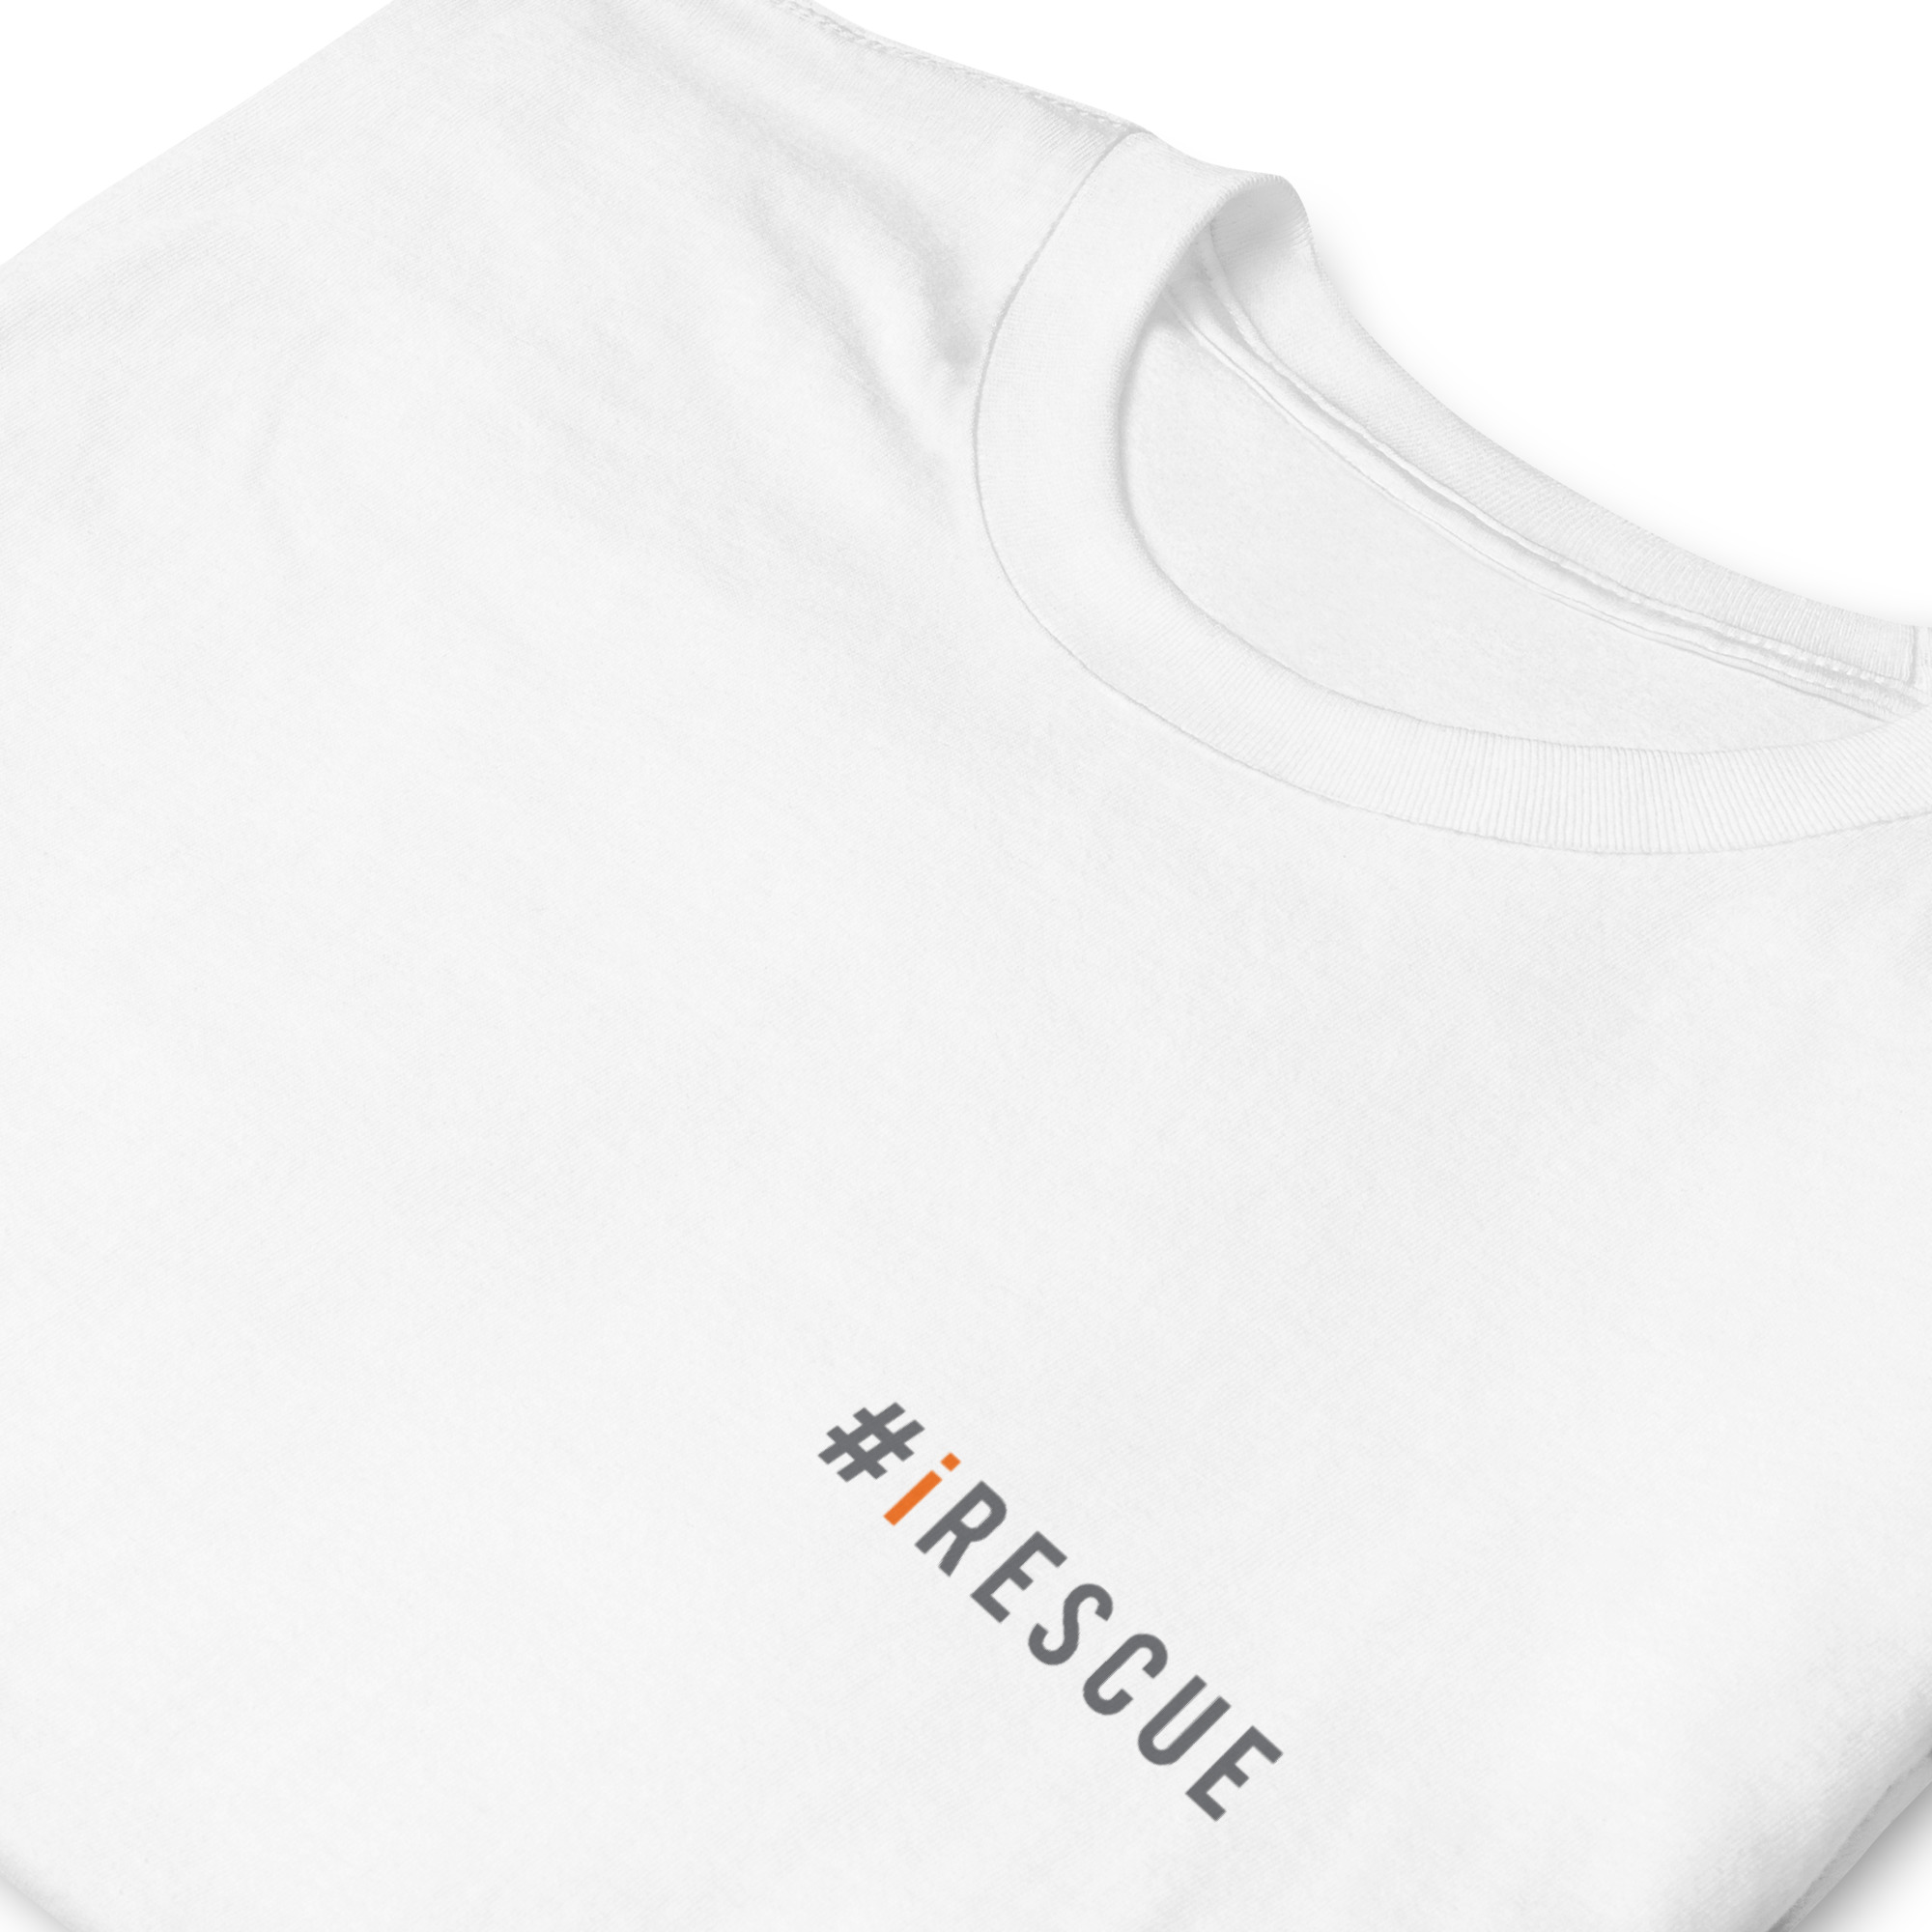 unisex-basic-softstyle-t-shirt-white-zoomed-in-633e79d216451.jpg